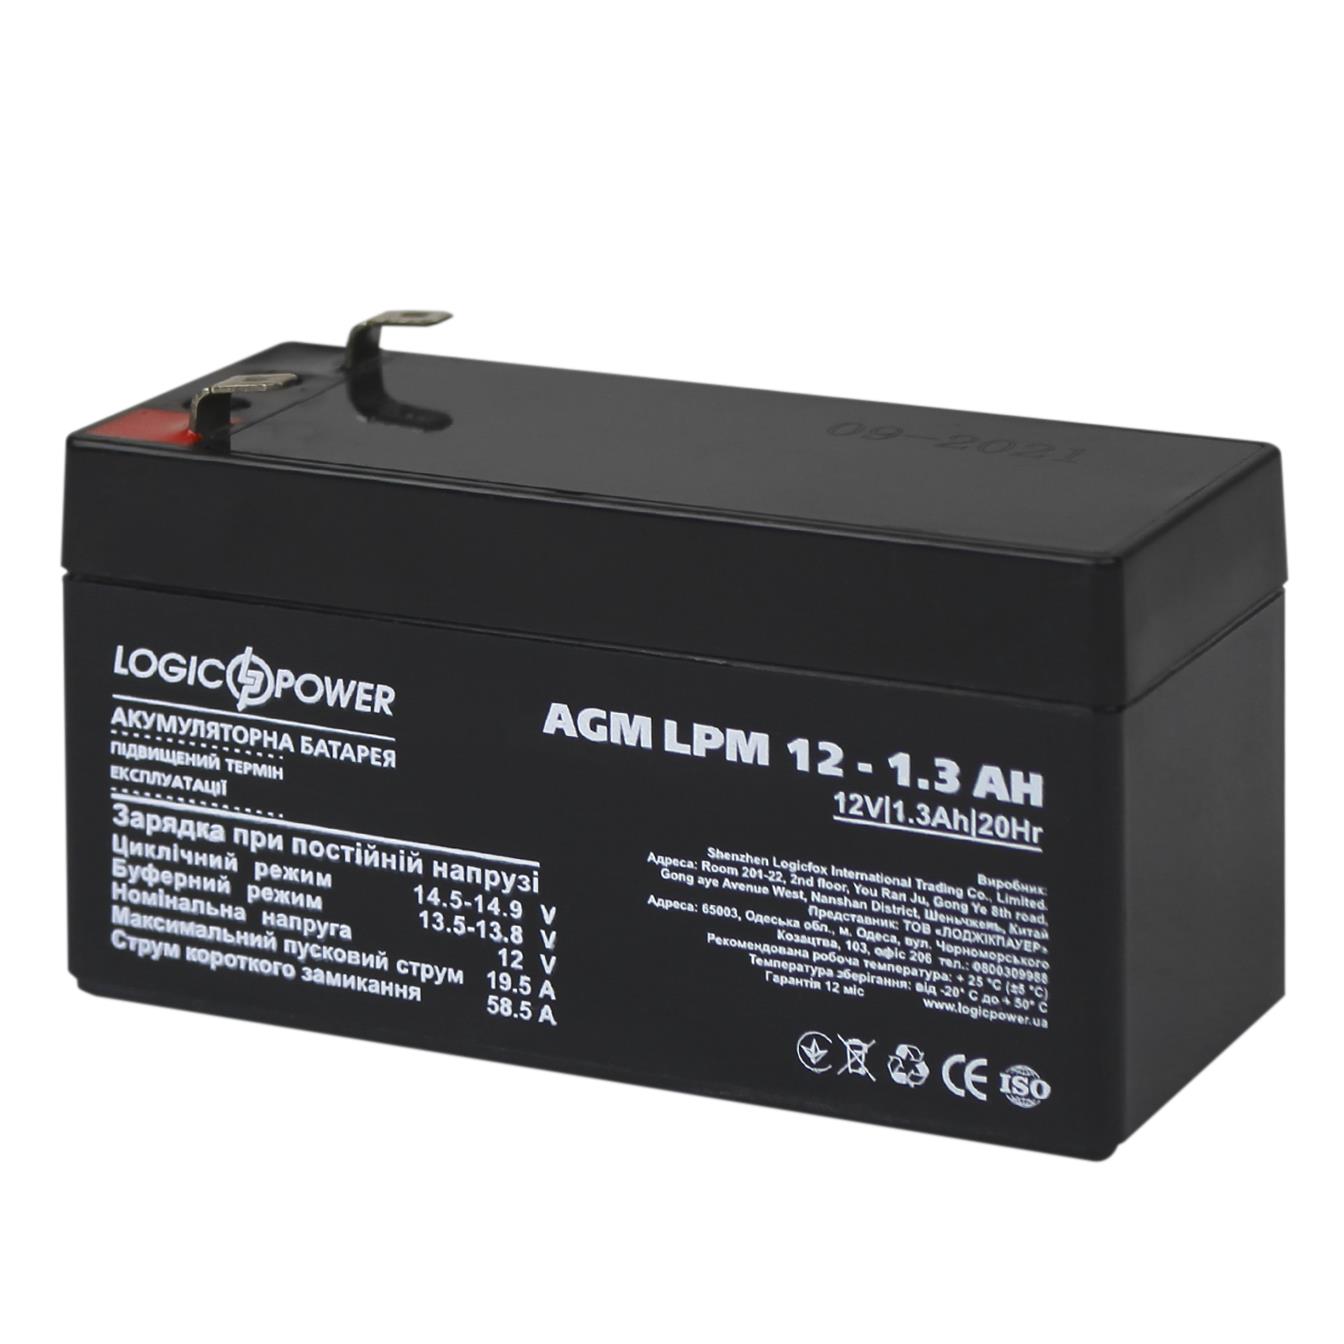 Акумулятор свинцево-кислотний LogicPower AGM LPM 12V - 1.3 Ah (4131)